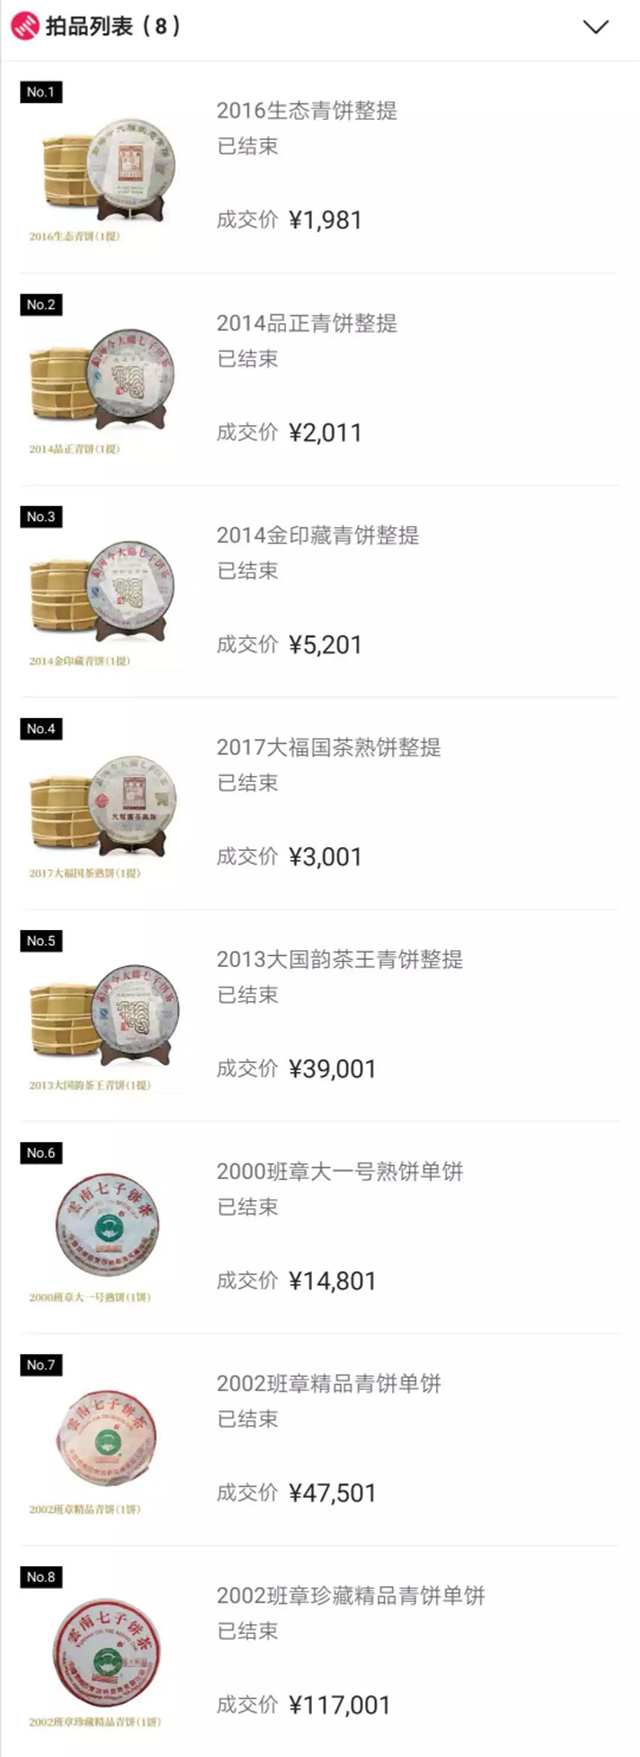 2019广州茶博会今大福产品拍卖成绩